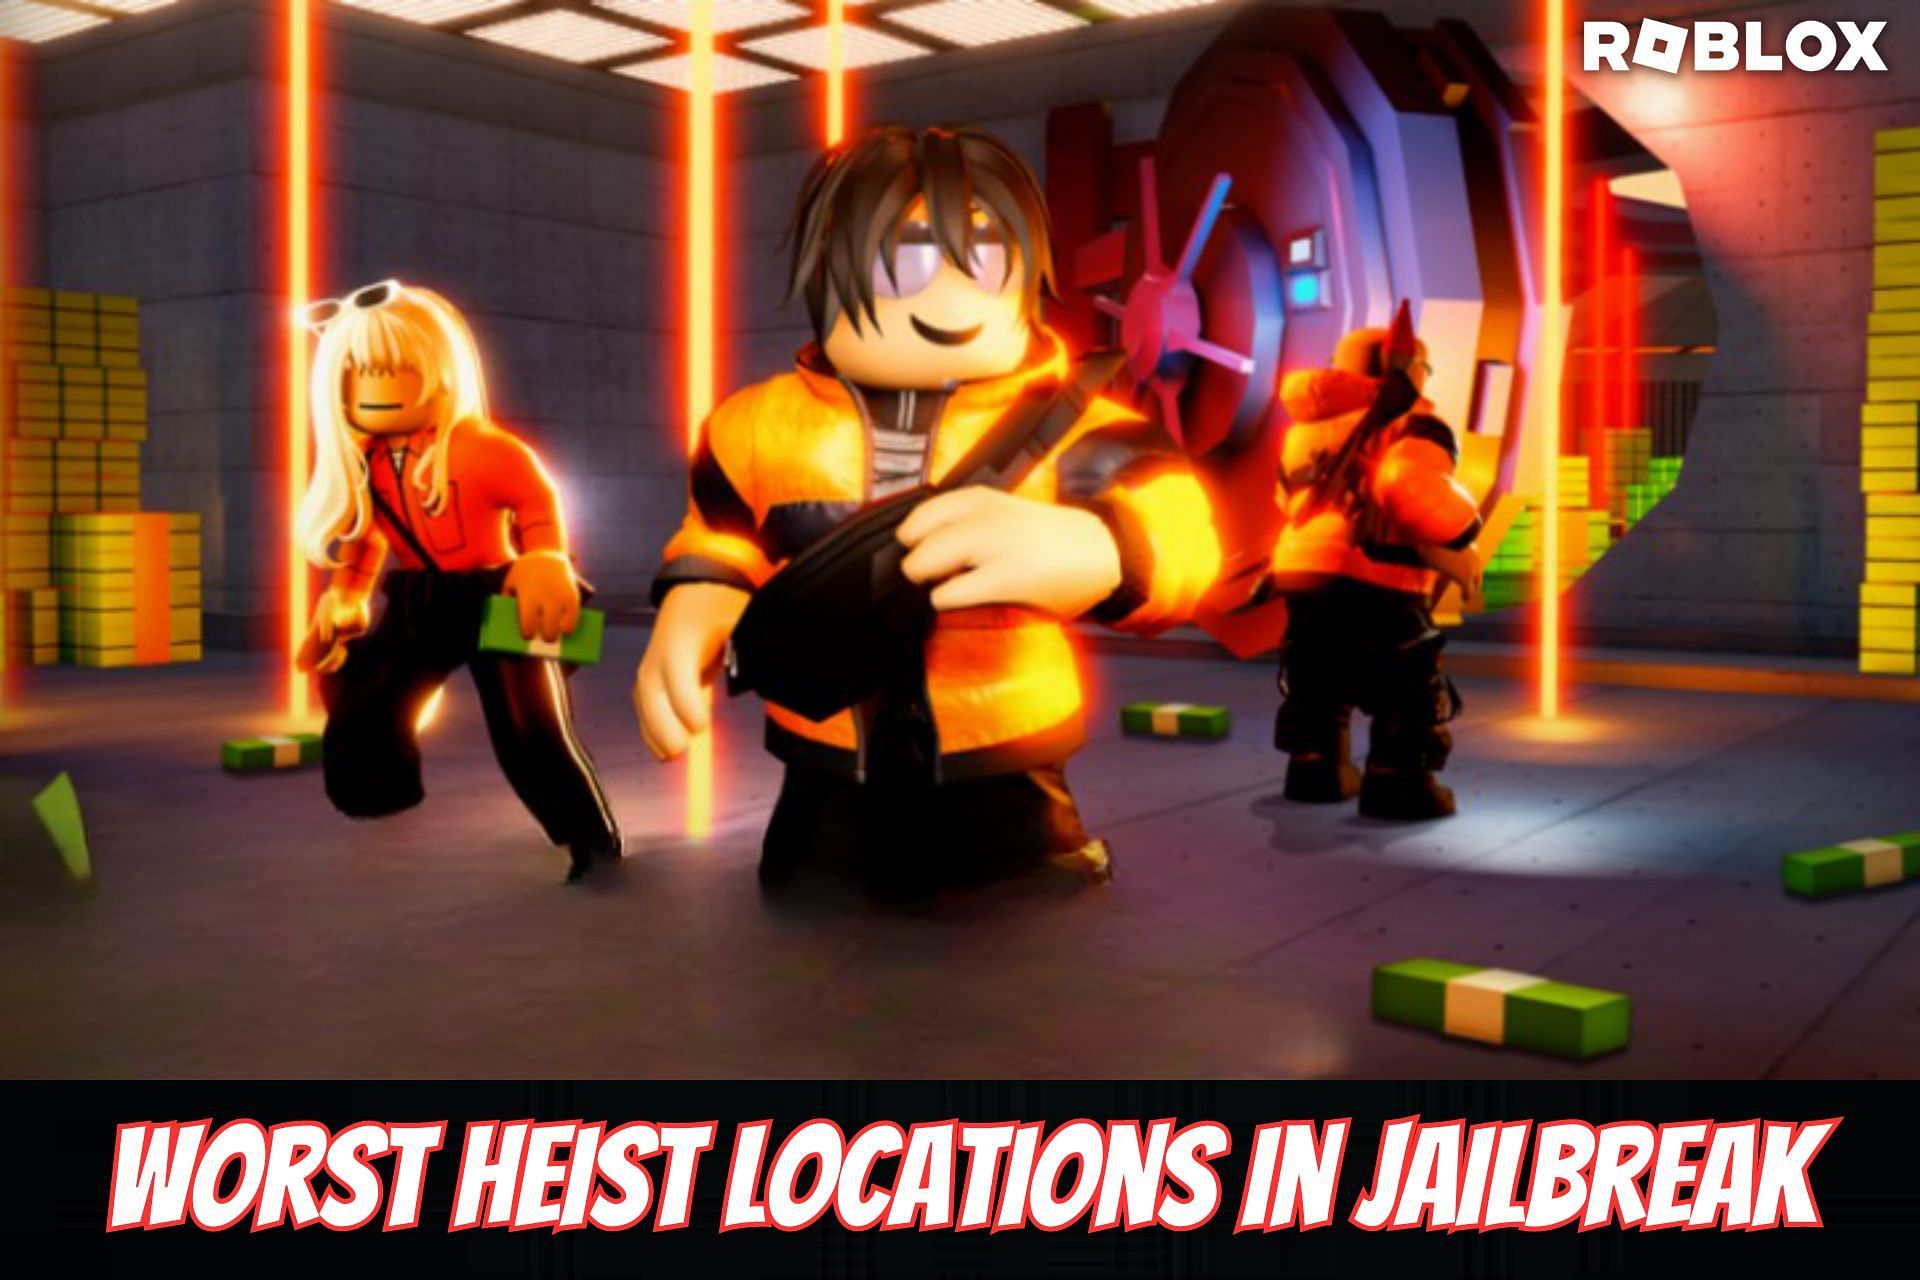 Top 5 Worst Heist Locations in Roblox Jailbreak